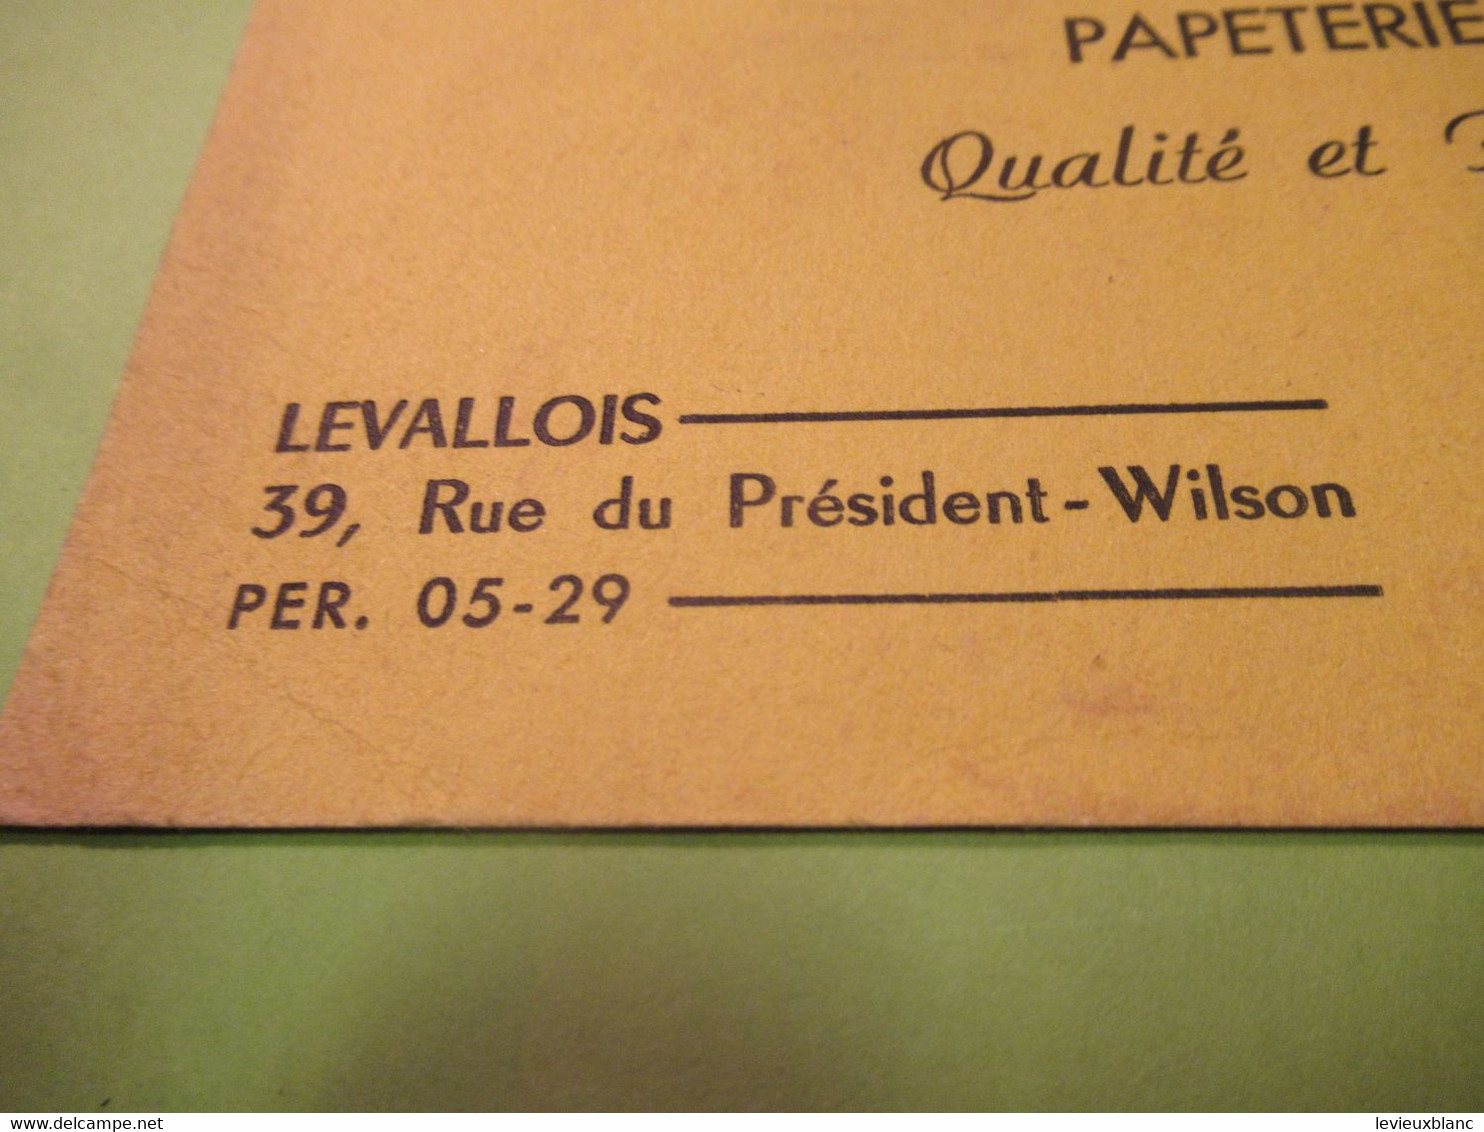 Buvard Ancien/Librairie /Papeterie Scolaire/ Tout Pour Lire,écrire, Dessiner/LEVALLOIS/ NANTERRE/Vers 1950-60     BUV592 - Papierwaren